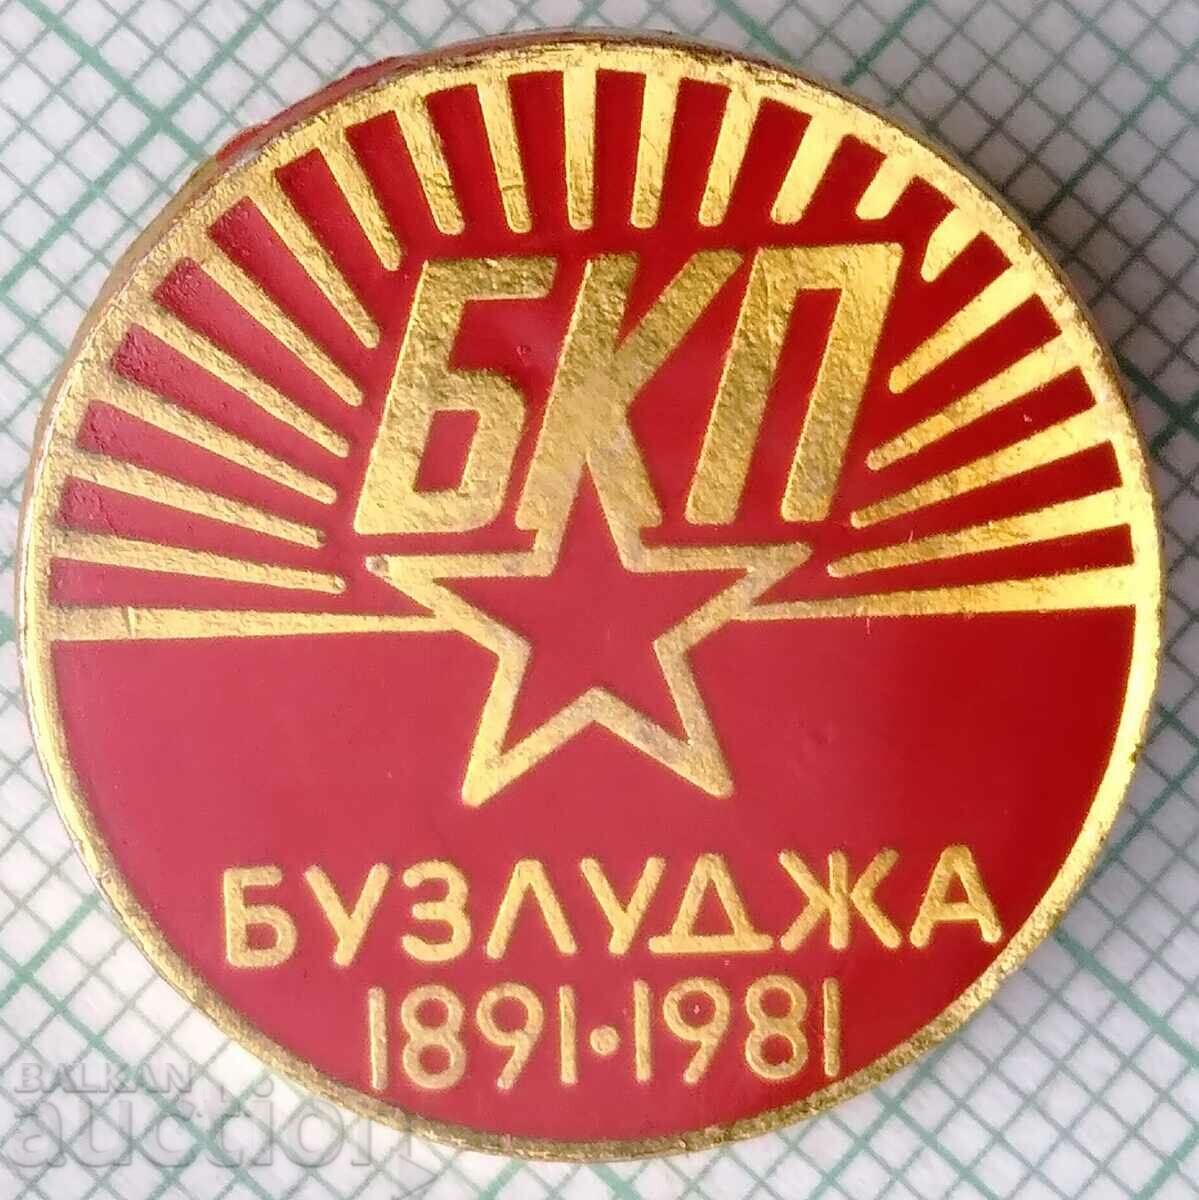 12731 Badge - BKP Buzludzha 1891-1981